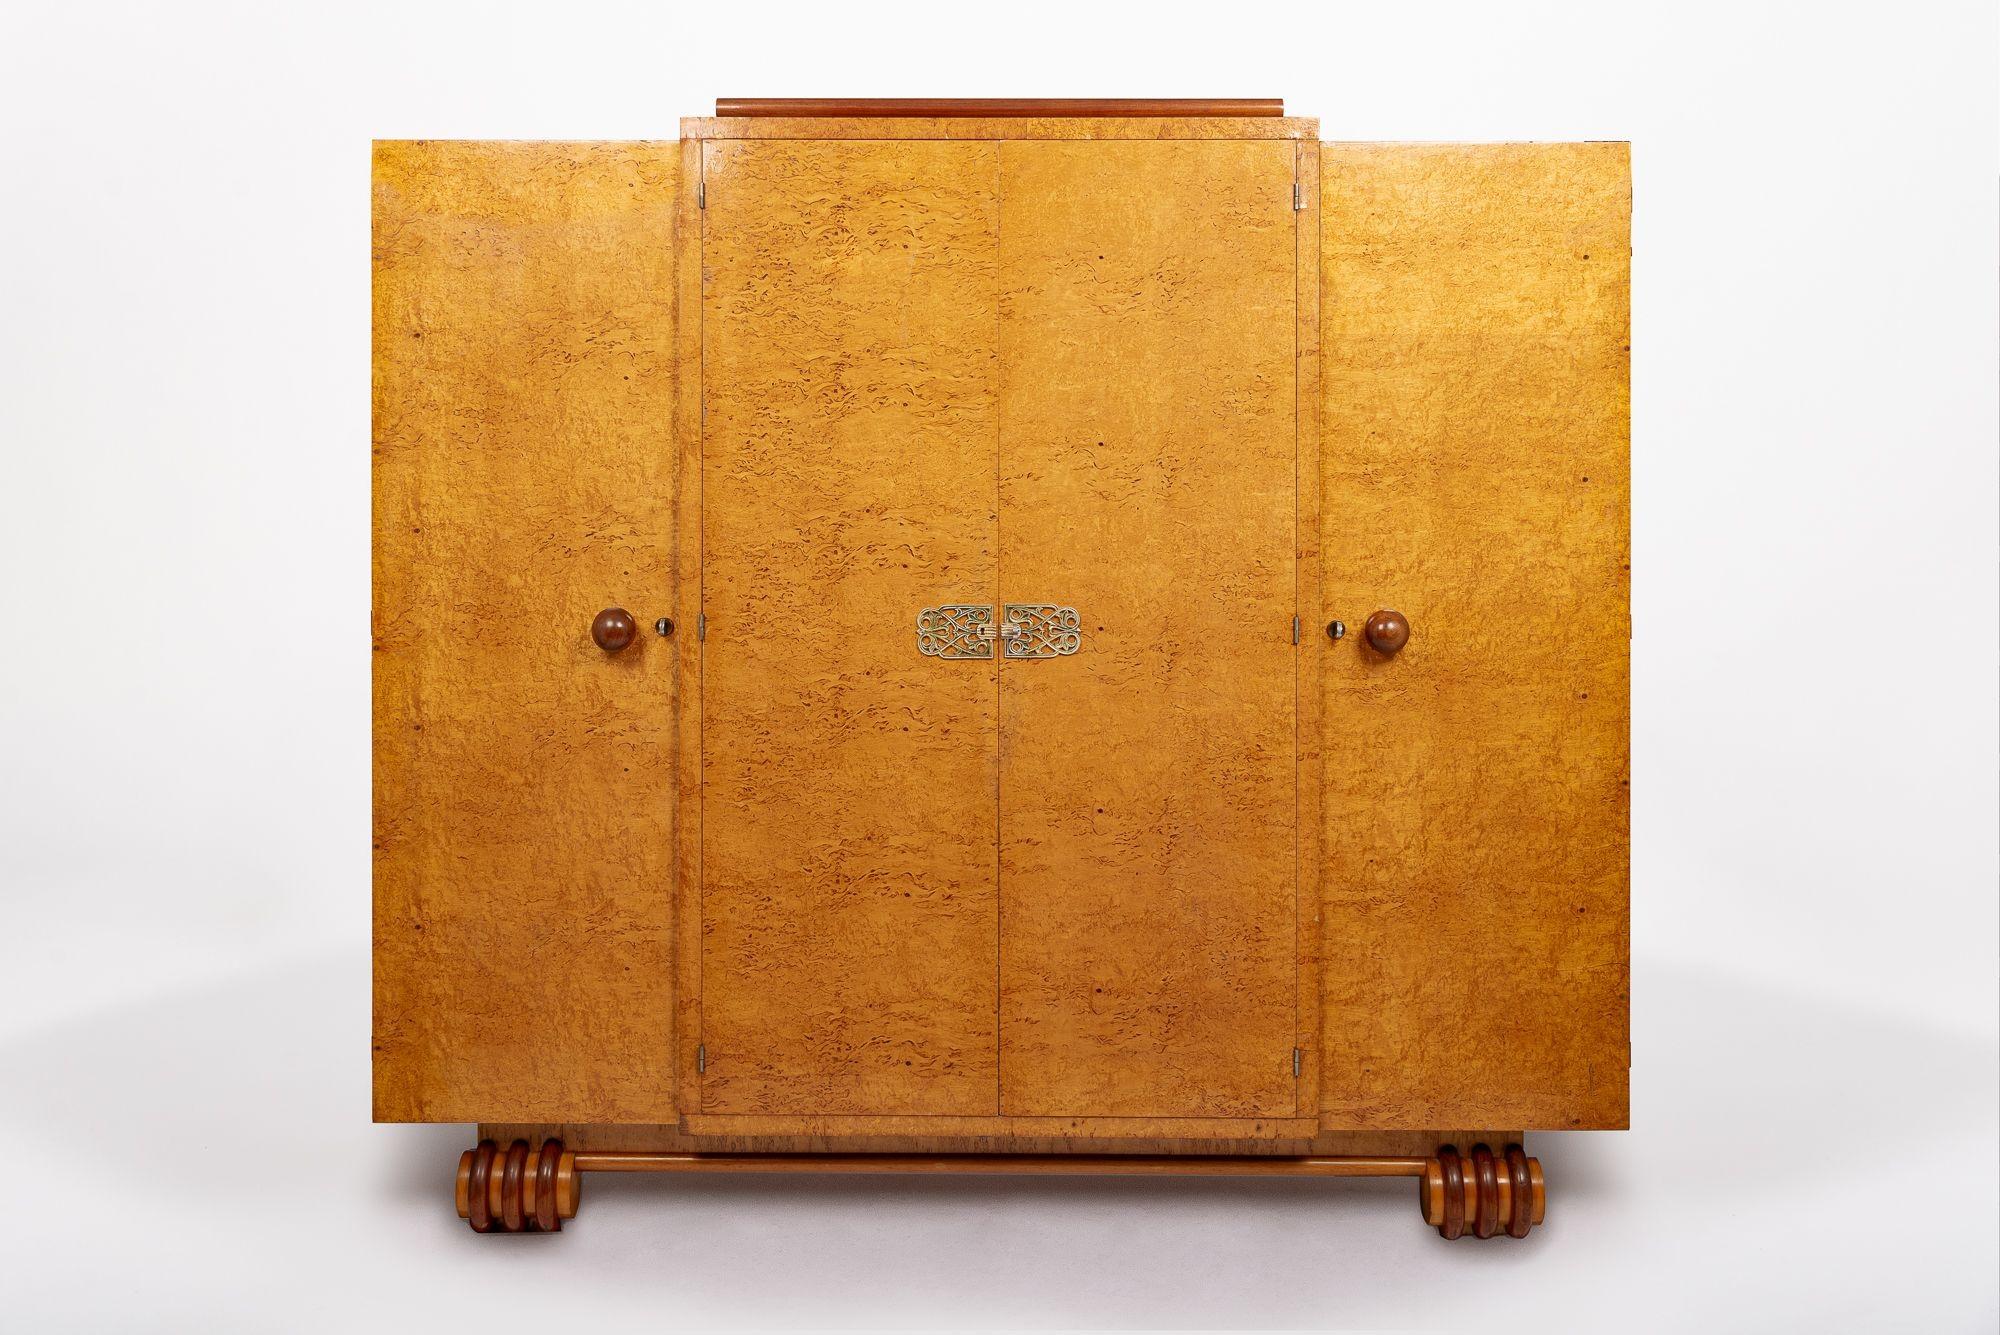 Diese unglaubliche antike Art Deco Holz Wäscheschrank oder Kleiderschrank Schrank ist ca. 1930. Der Schrank ist in tadelloser Handarbeit aus Massivholz und Birdseye-Ahornfurnier mit wunderschöner Maserung gefertigt. Die mittleren Doppeltüren sind